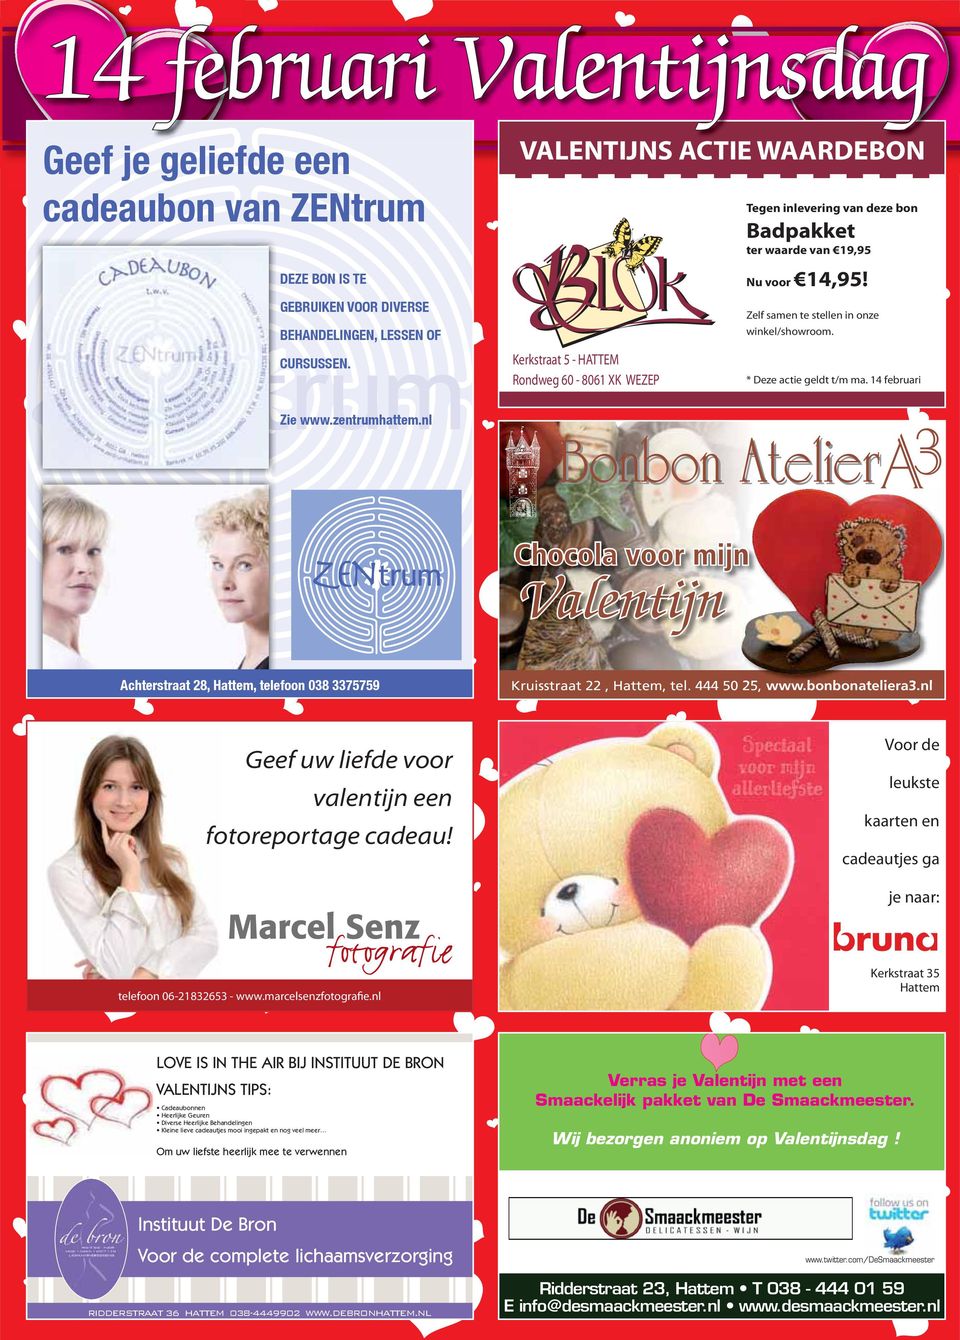 bonbonateliera3.nl Geef uw liefde voor valentijn een fotoreportage cadeau! Voor de leukste kaarten en cadeautjes ga je naar: telefoon 06-21832653 - www.marcelsenzfotografie.